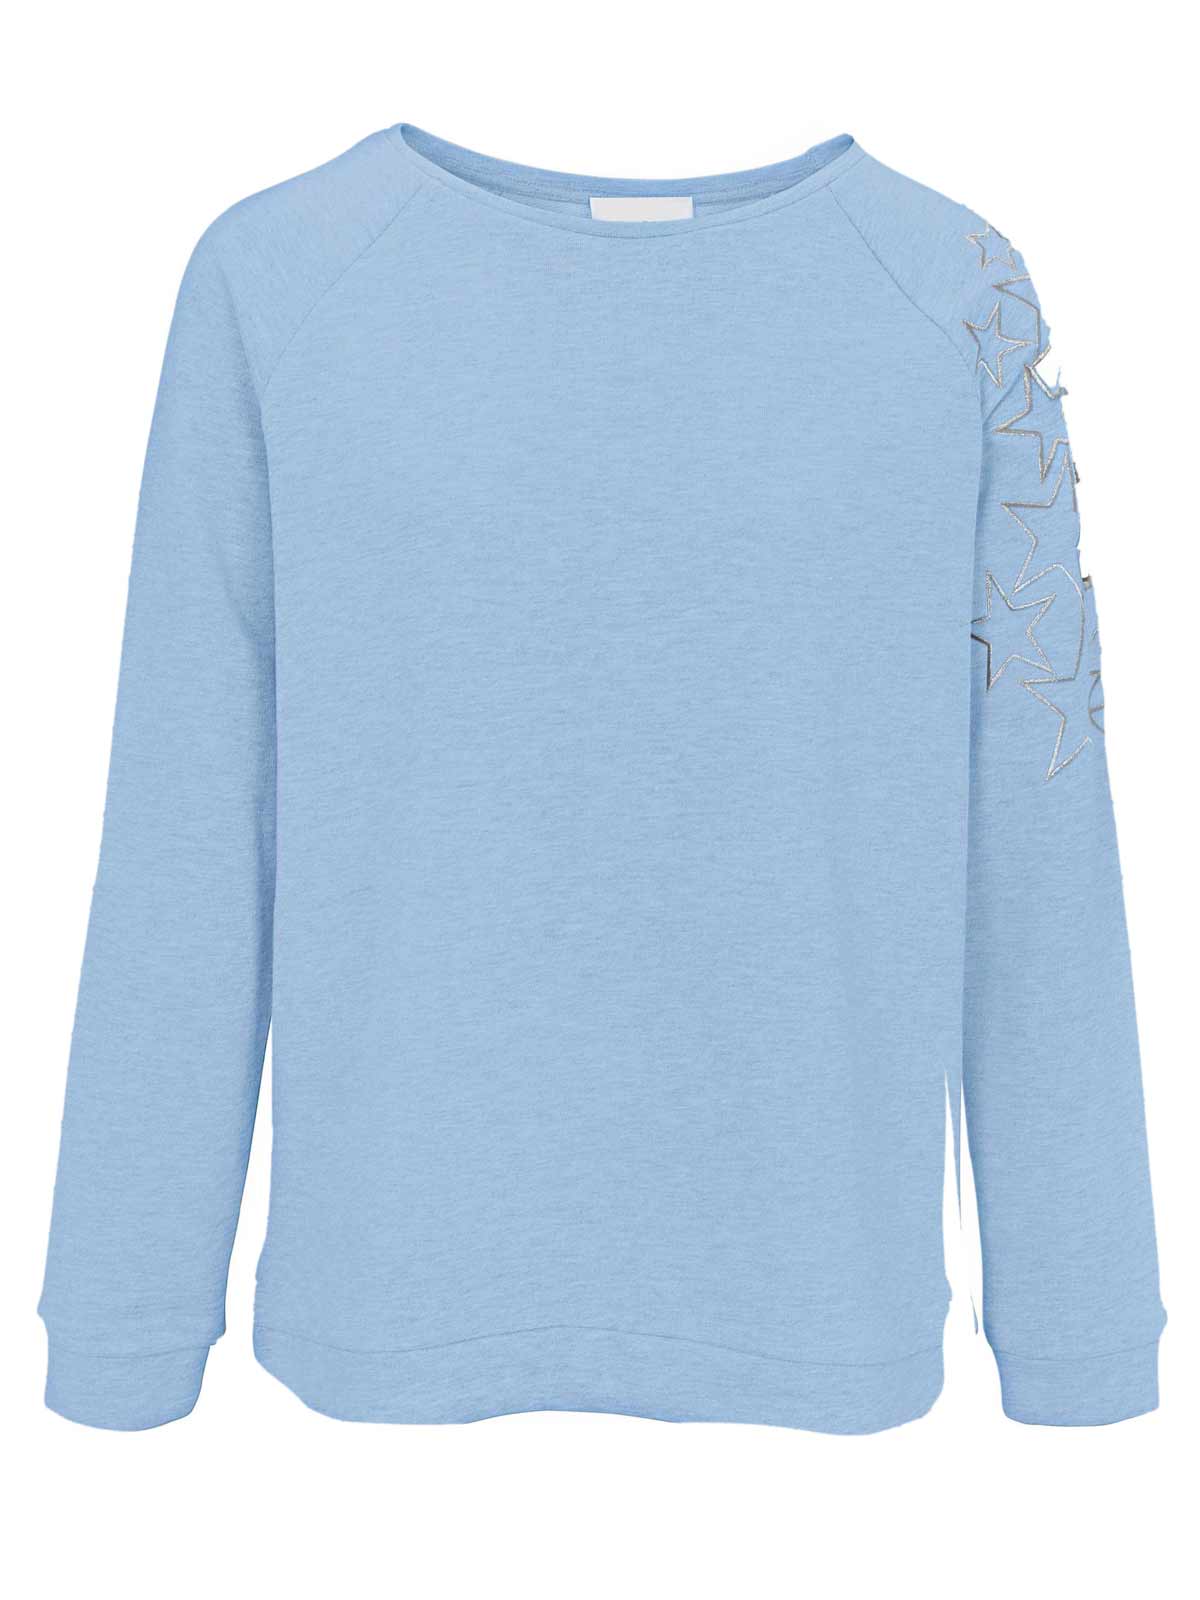 sweatshirts auf rechnung Sweatshirt von Heine, blau 769.452 MISSFORTY